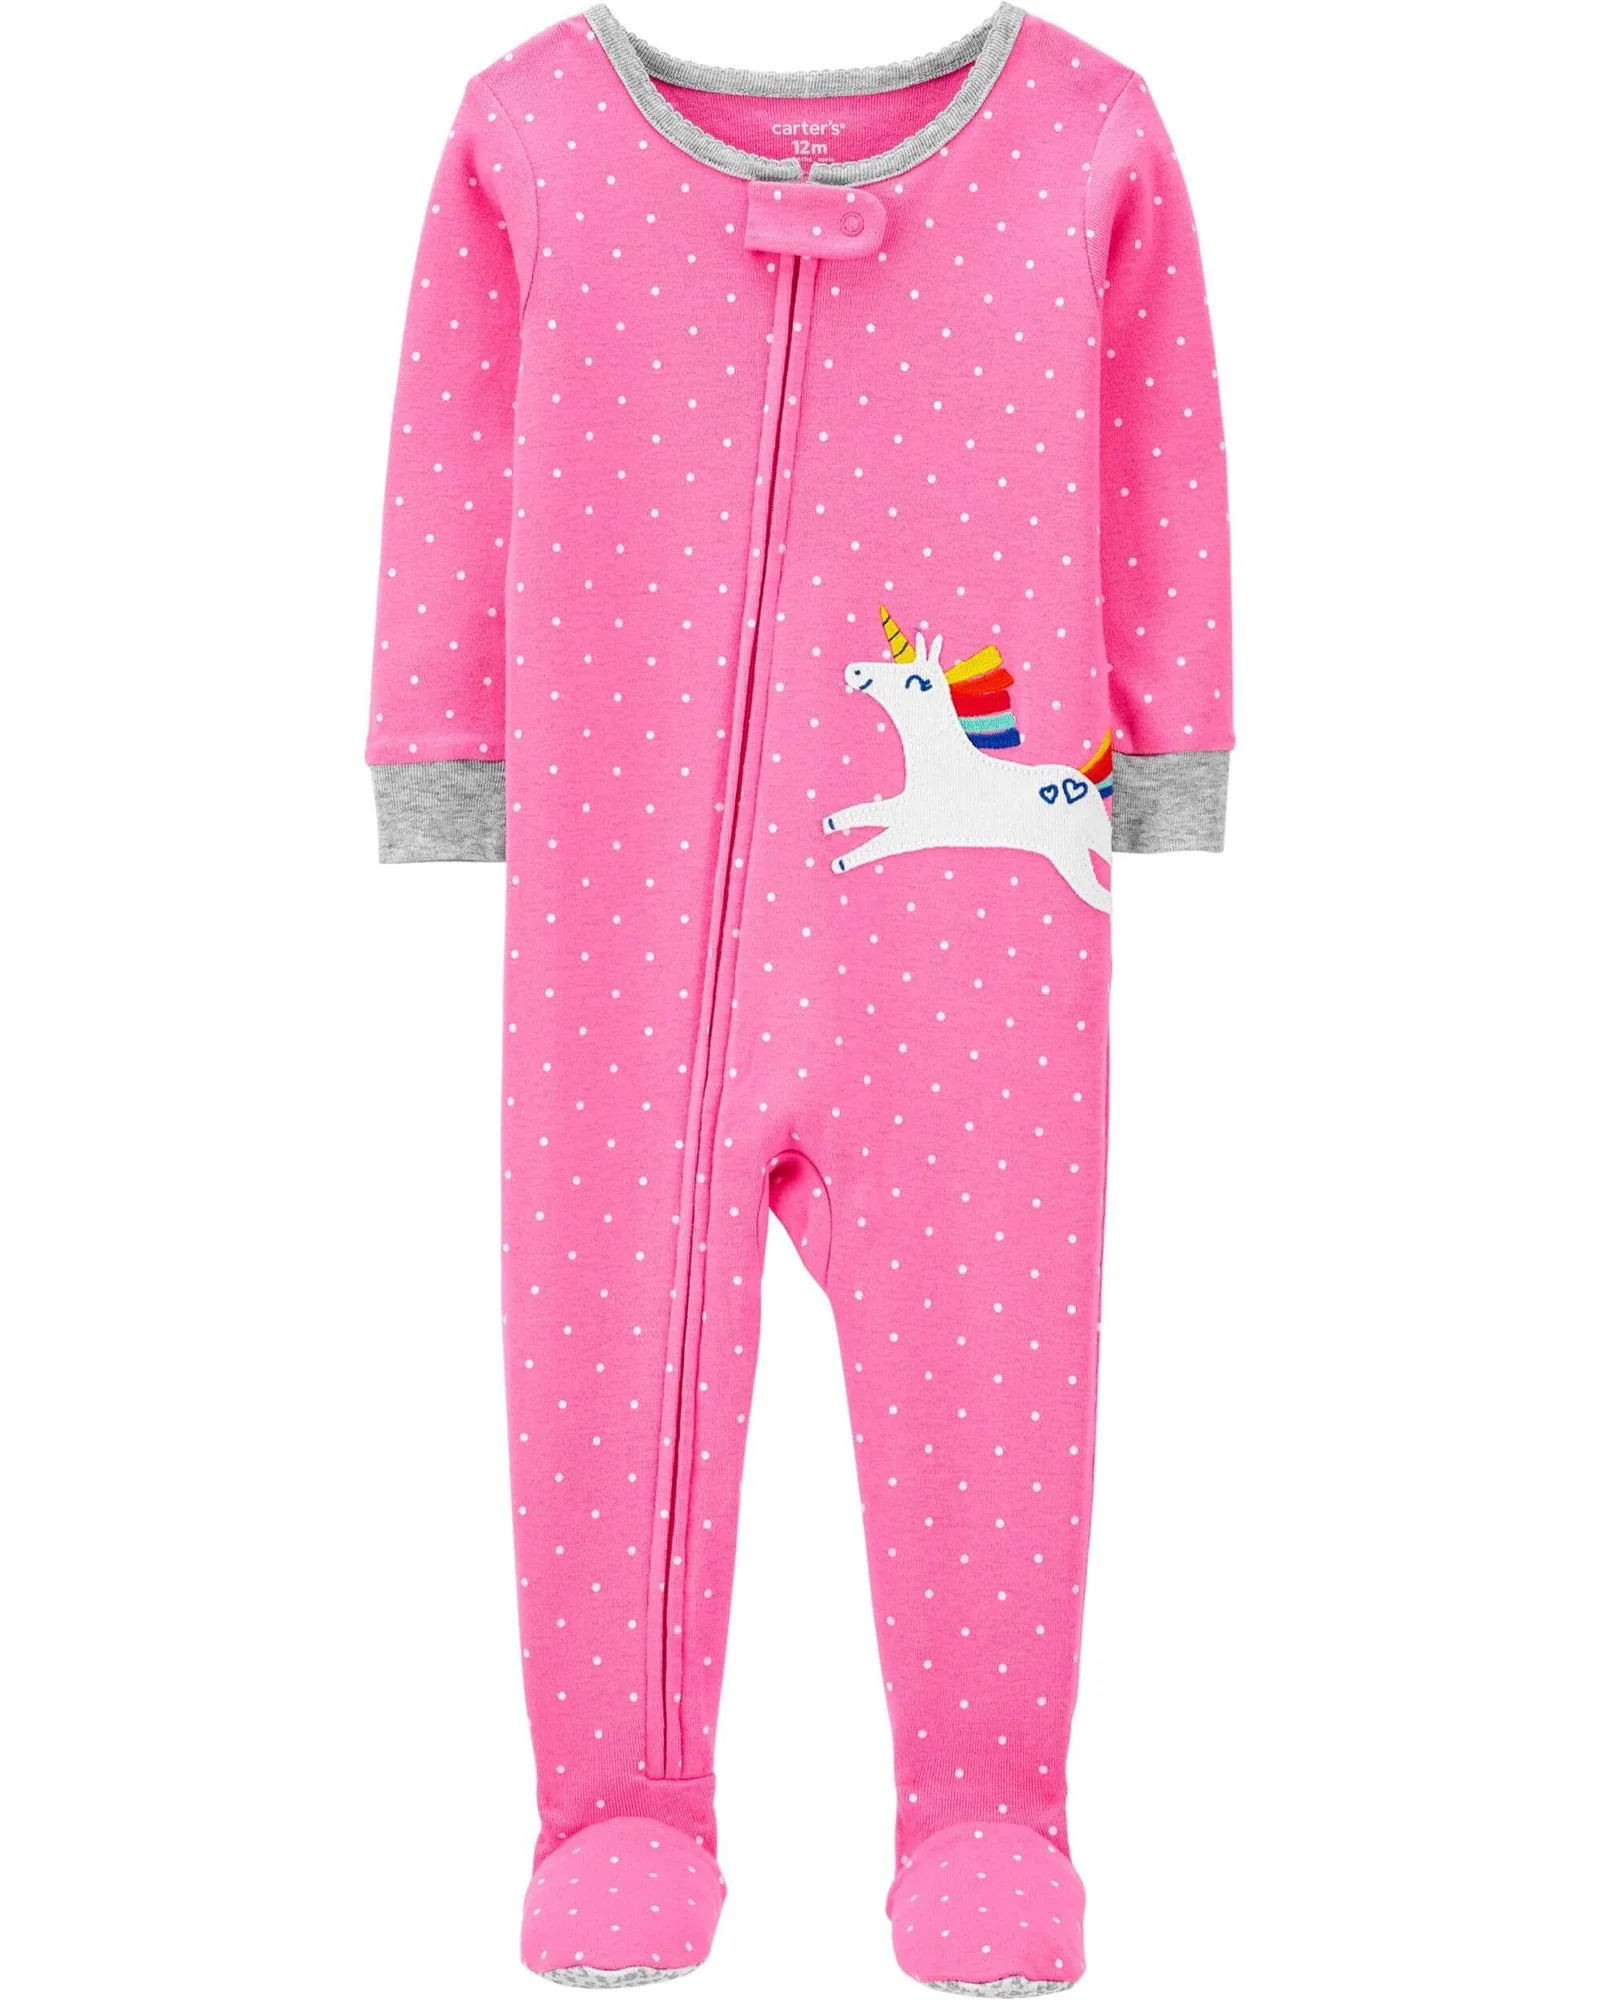 Carter's Pijama bebe Unicorn roz